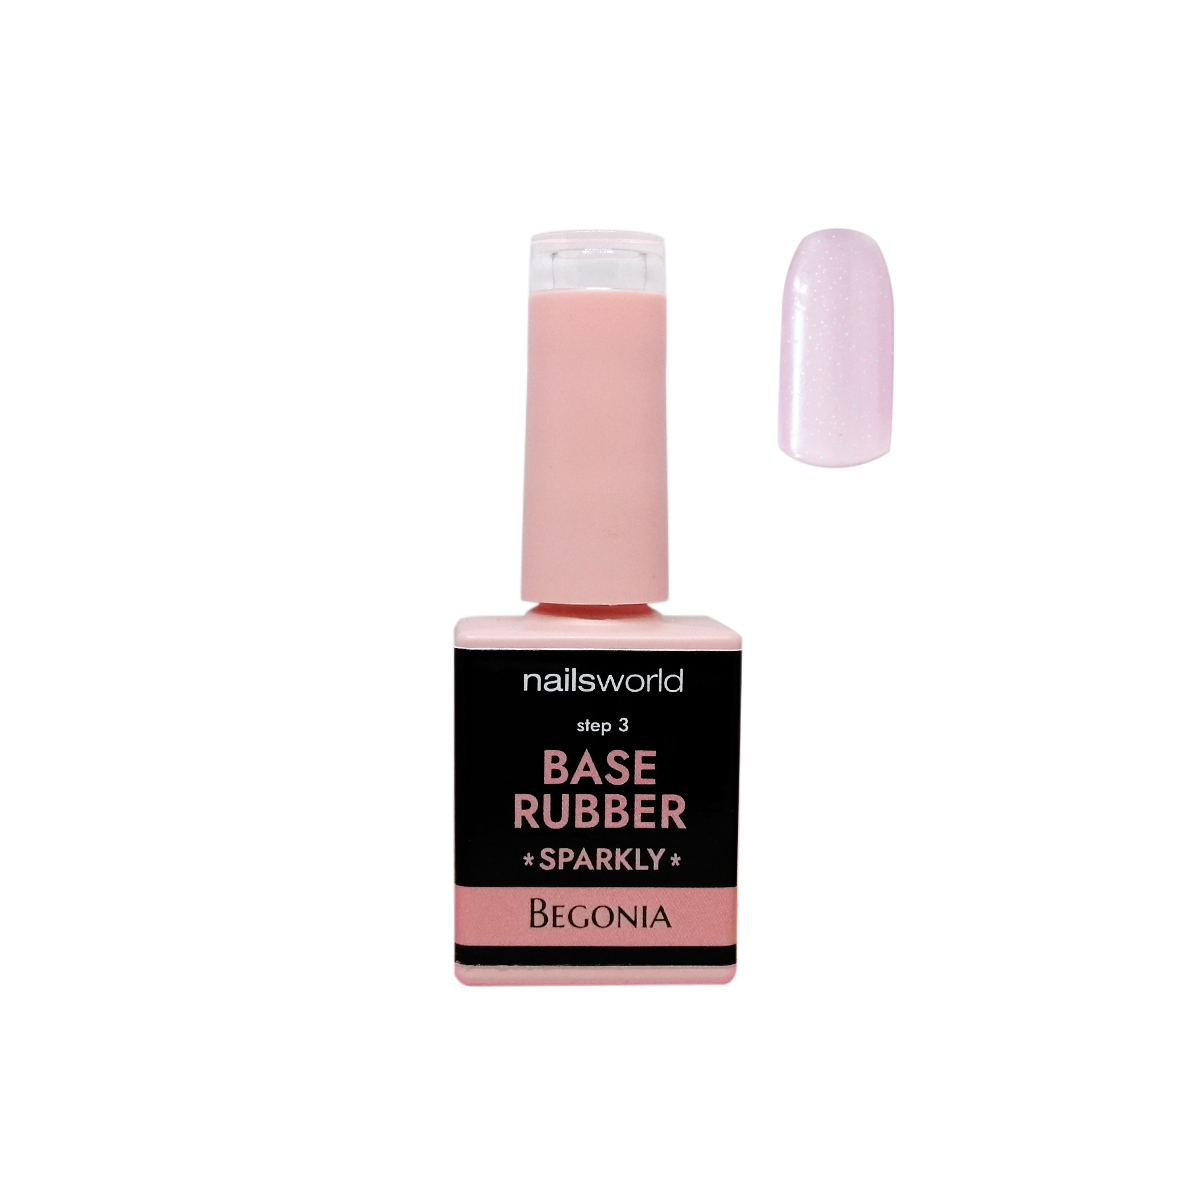 Base Rubber rosa nude tonalità Begonia effetto sparkly con microglitter